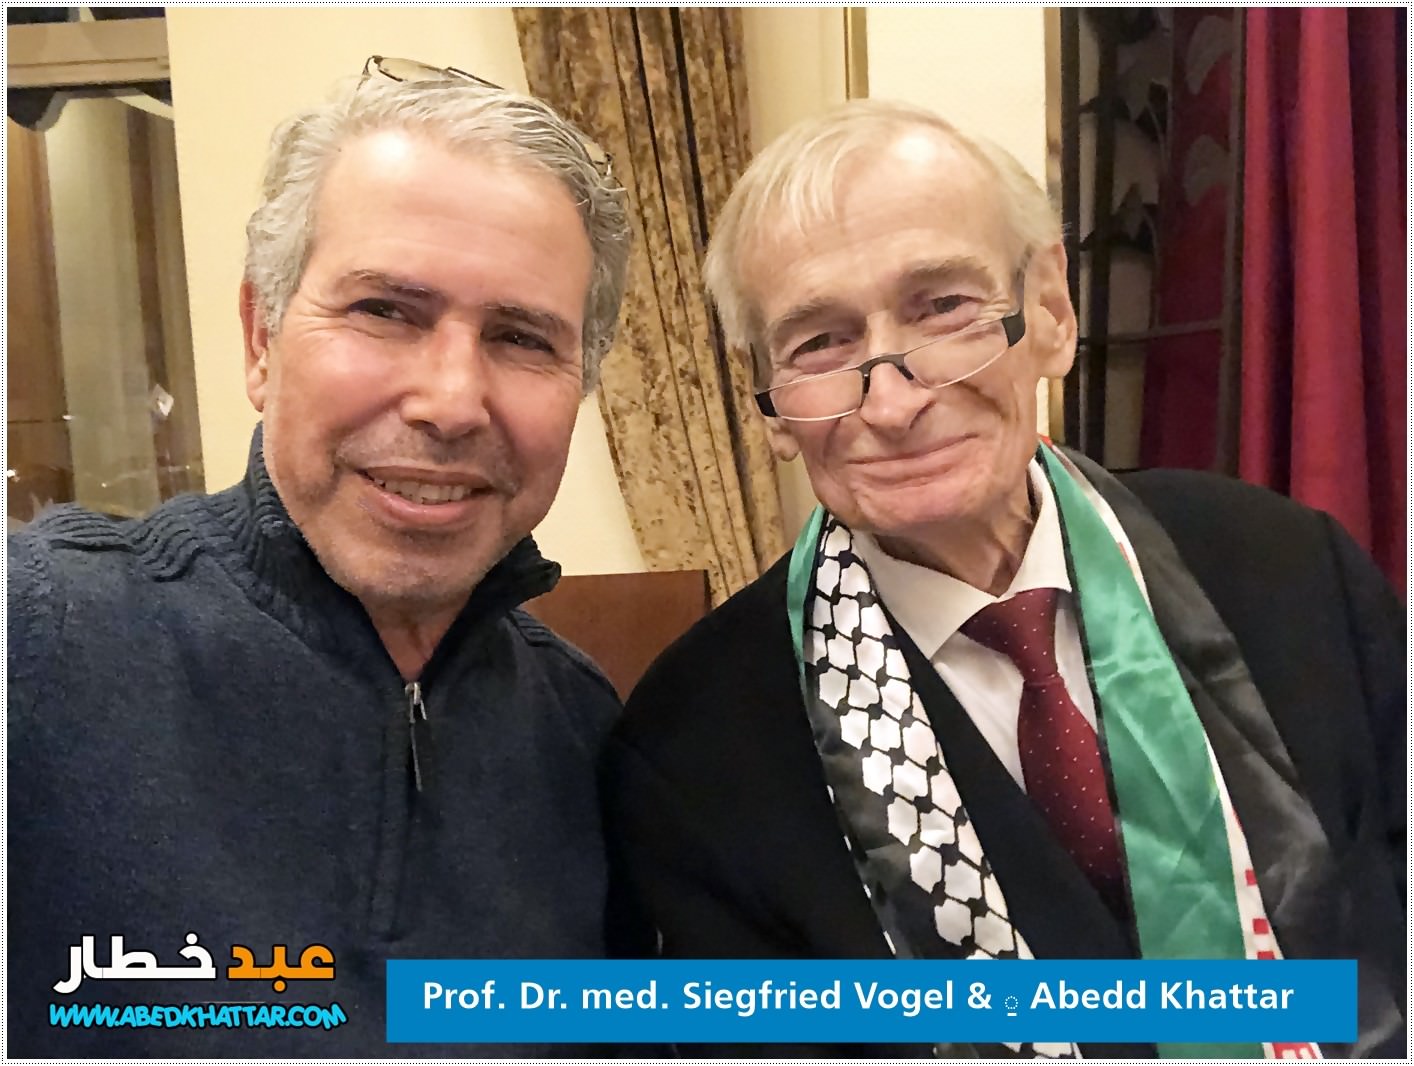 الجمعية الطبية الألمانية العربية في برلين تكرم وتودع البروفسور الالماني الدكتور سيغفريد فوغل